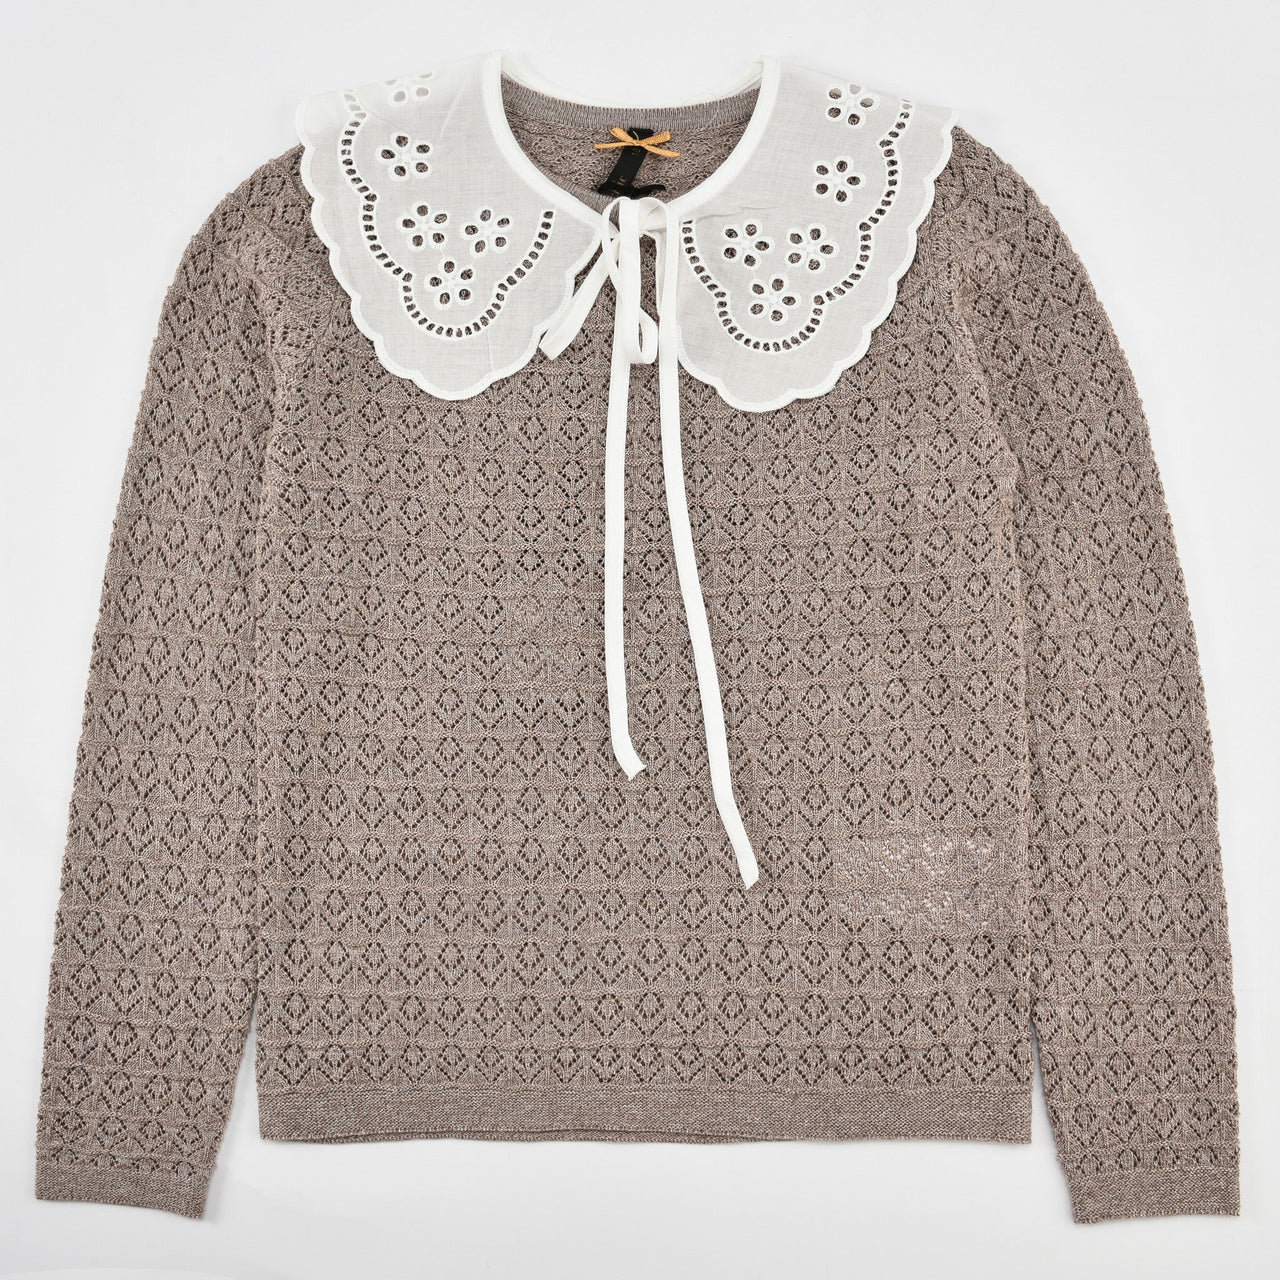 Lily Crochet Girls Sweater - Kidichic